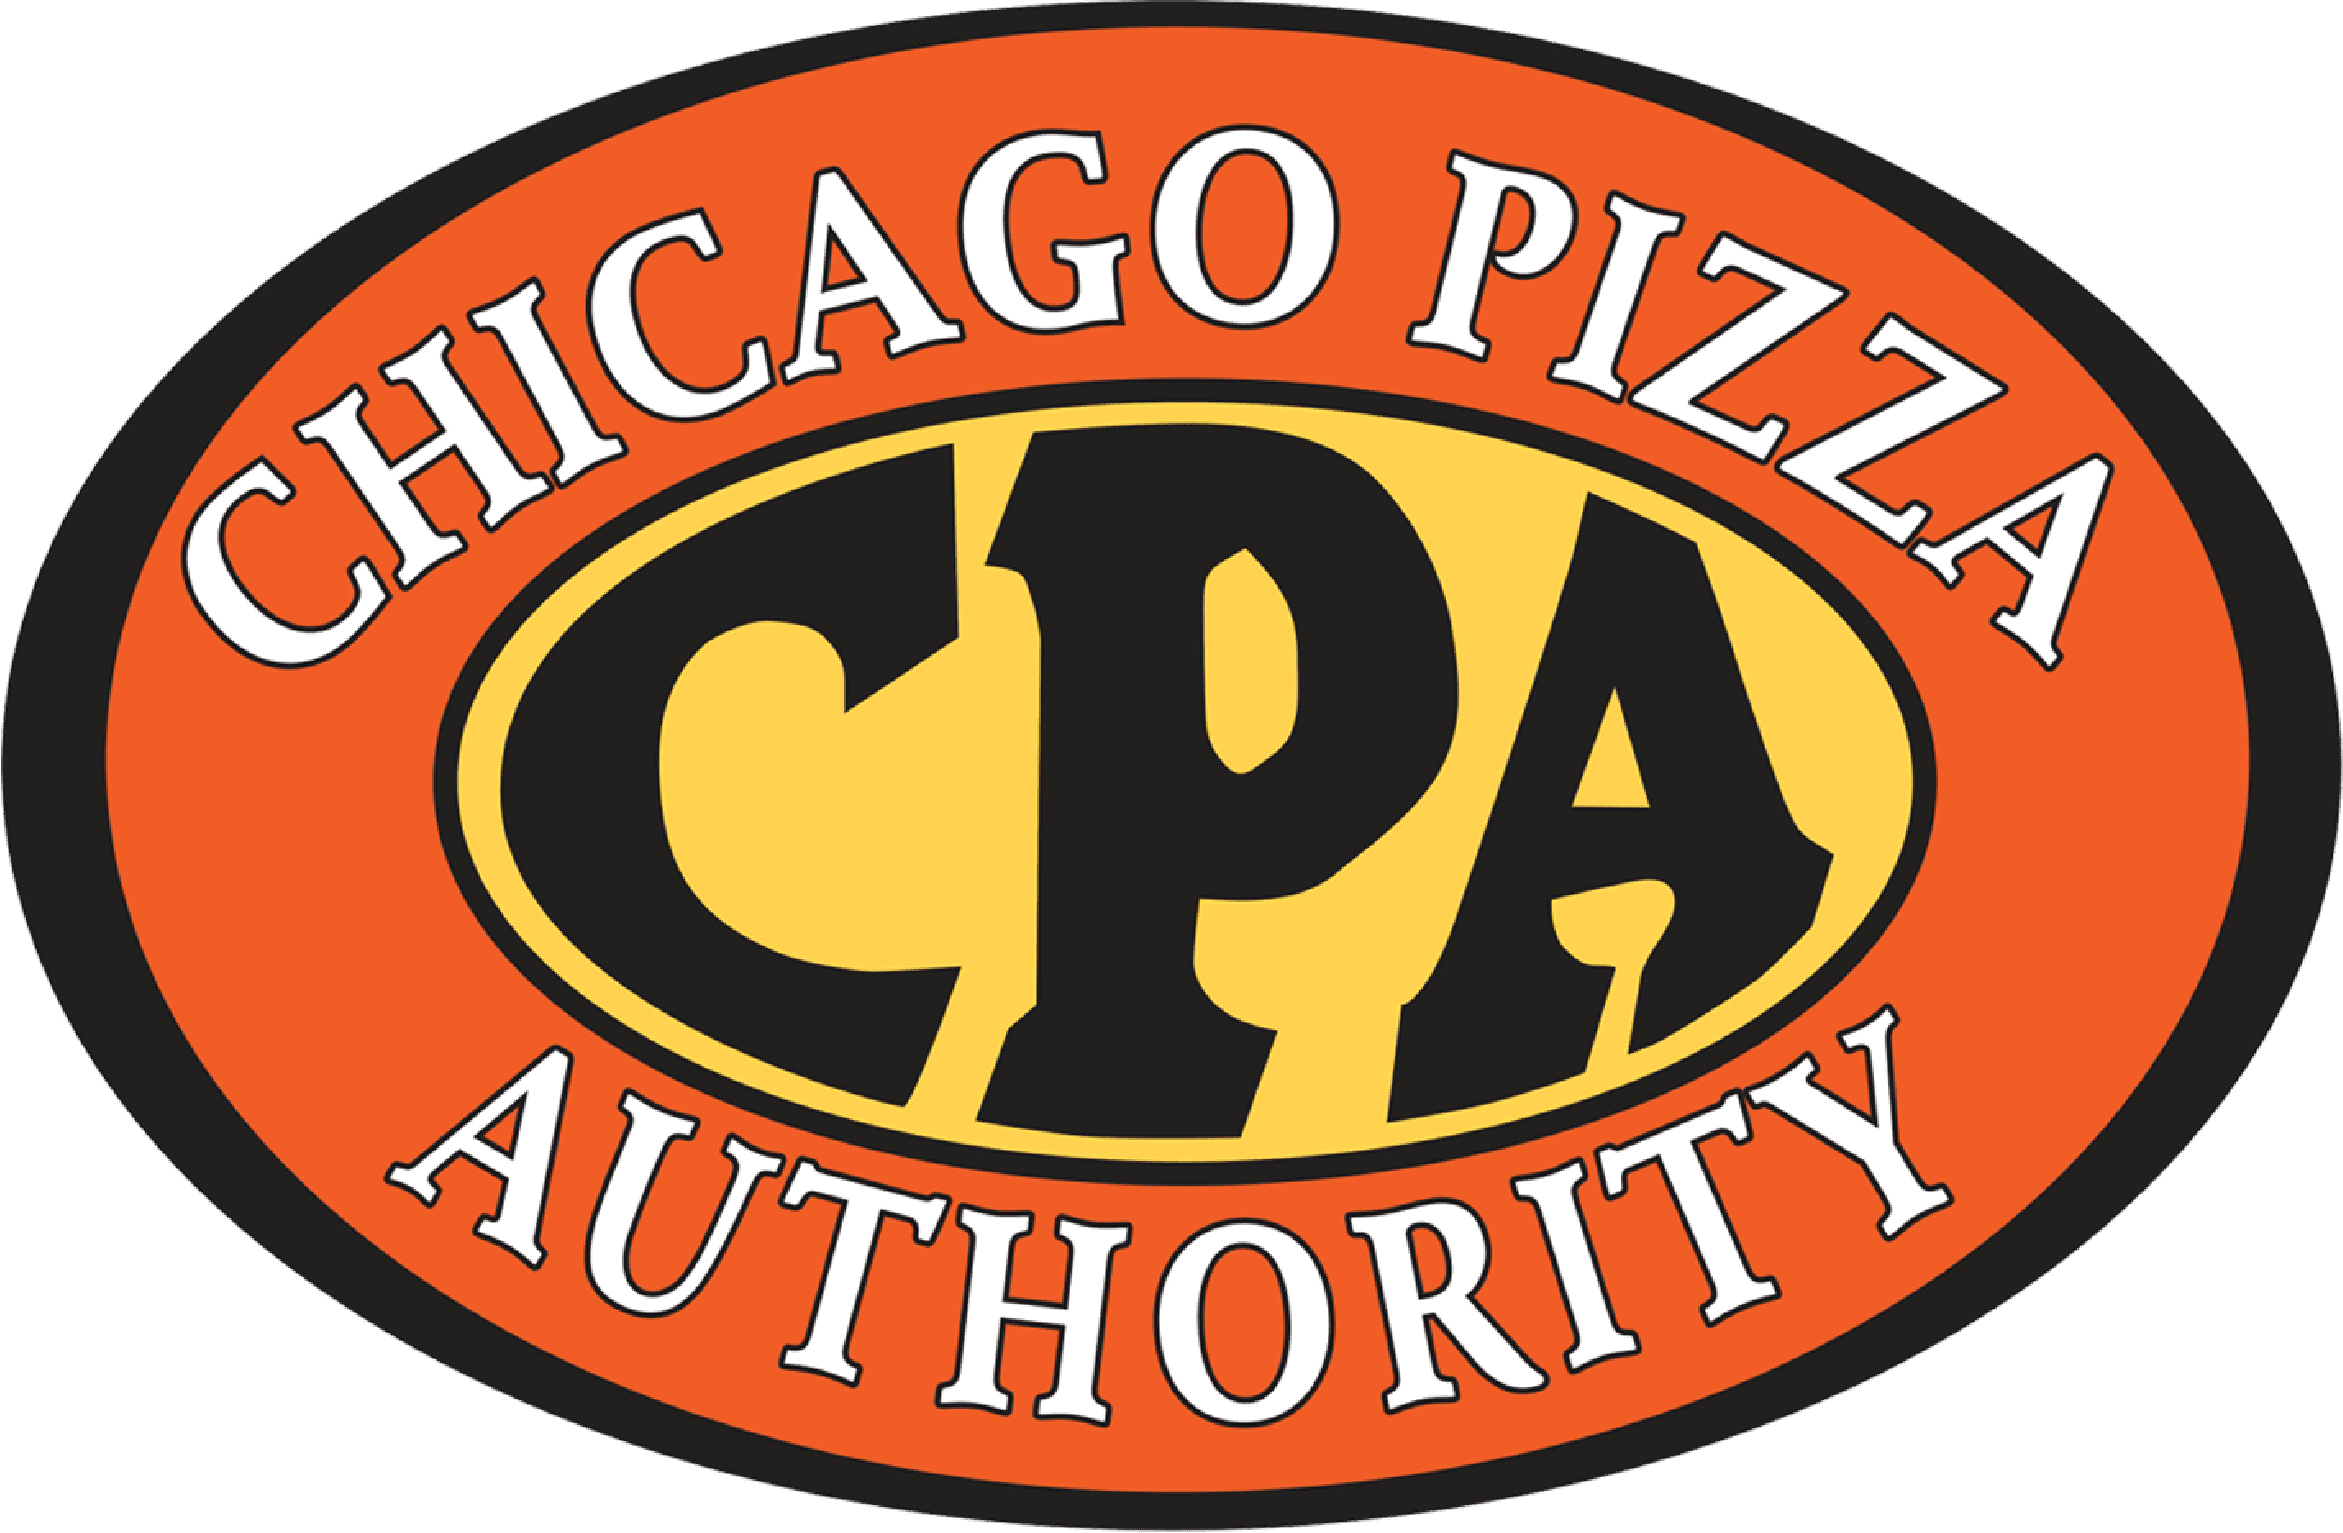 Chicago Pizza Authority